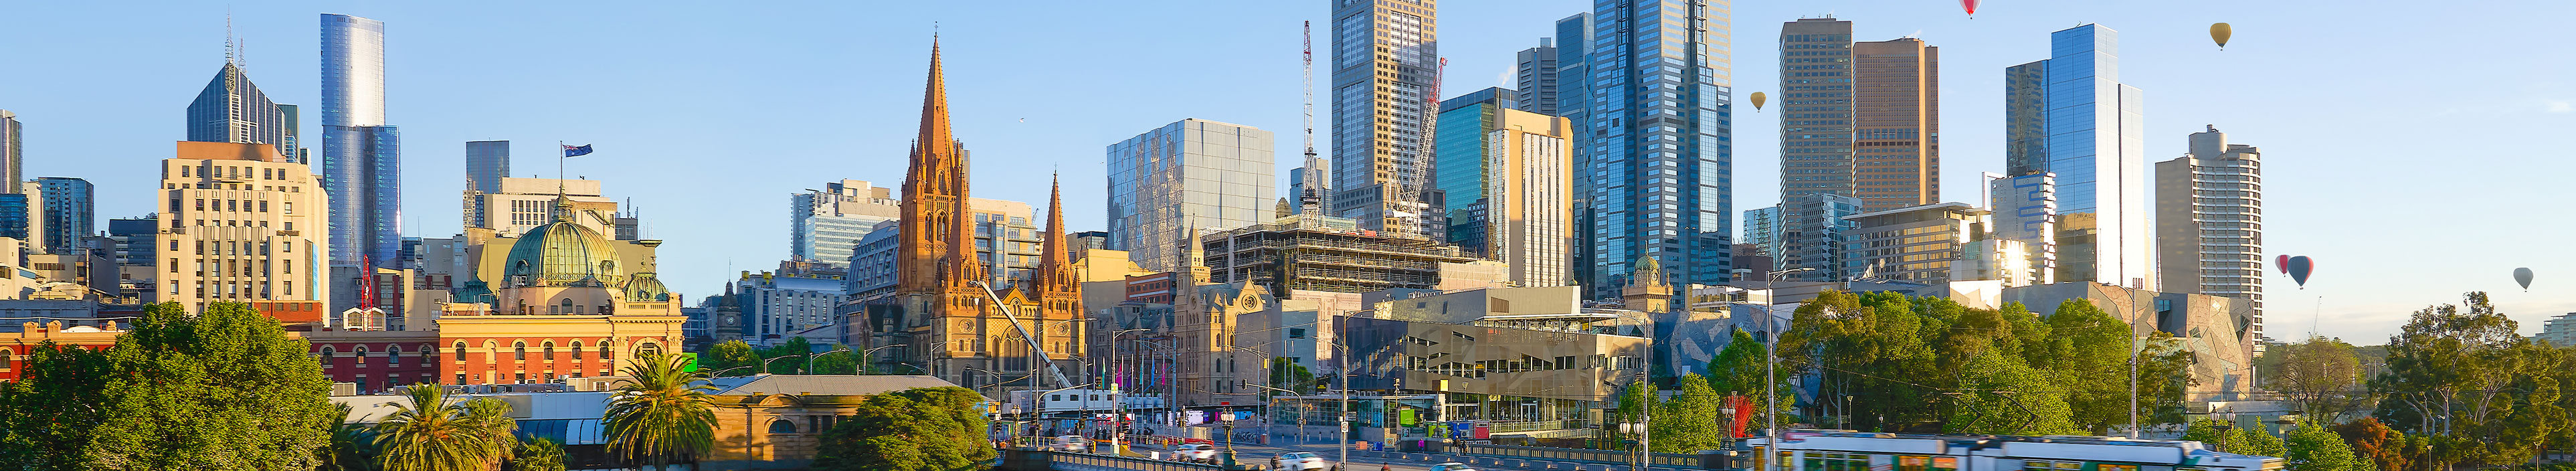 Panoramablick auf die schöne Skyline von Melbourne